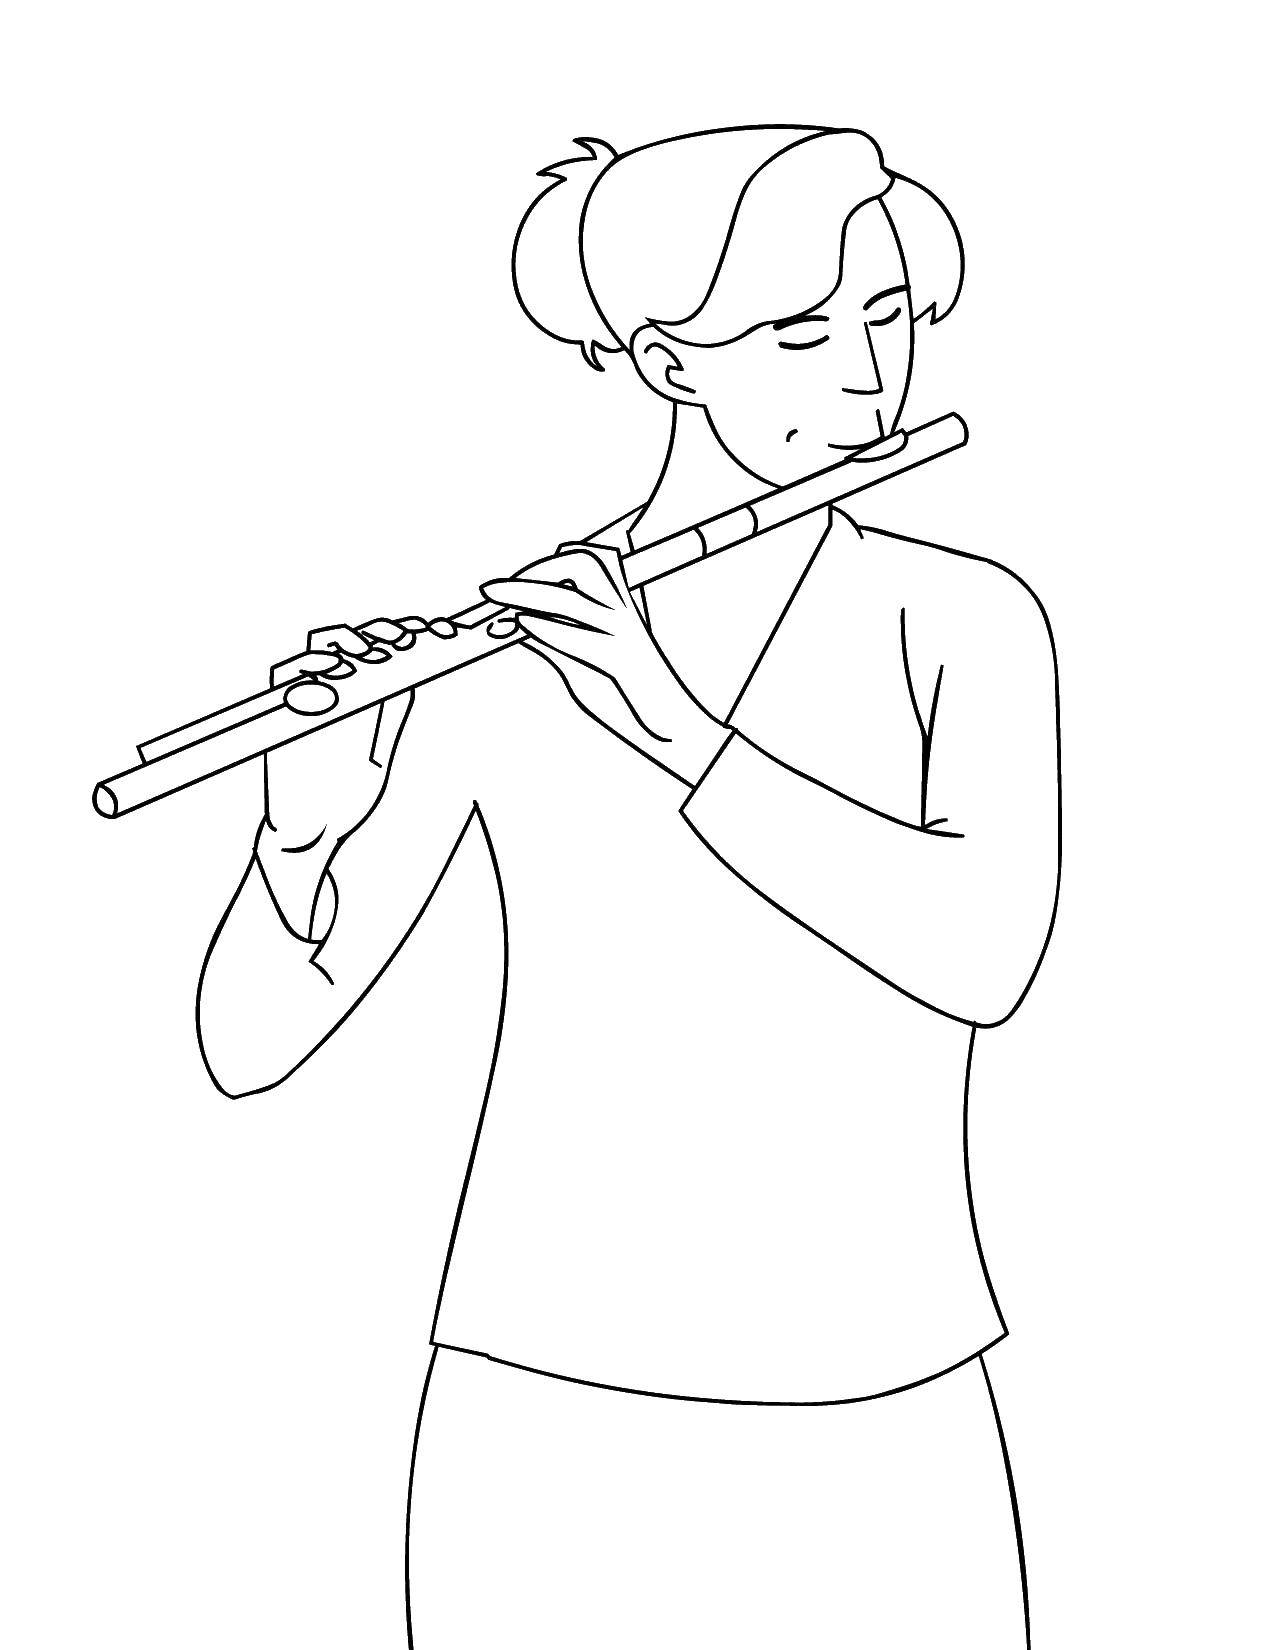 Название: Раскраска Девушка играет на флейте. Категория: Музыка. Теги: Музыка, инструмент, музыкант, ноты.